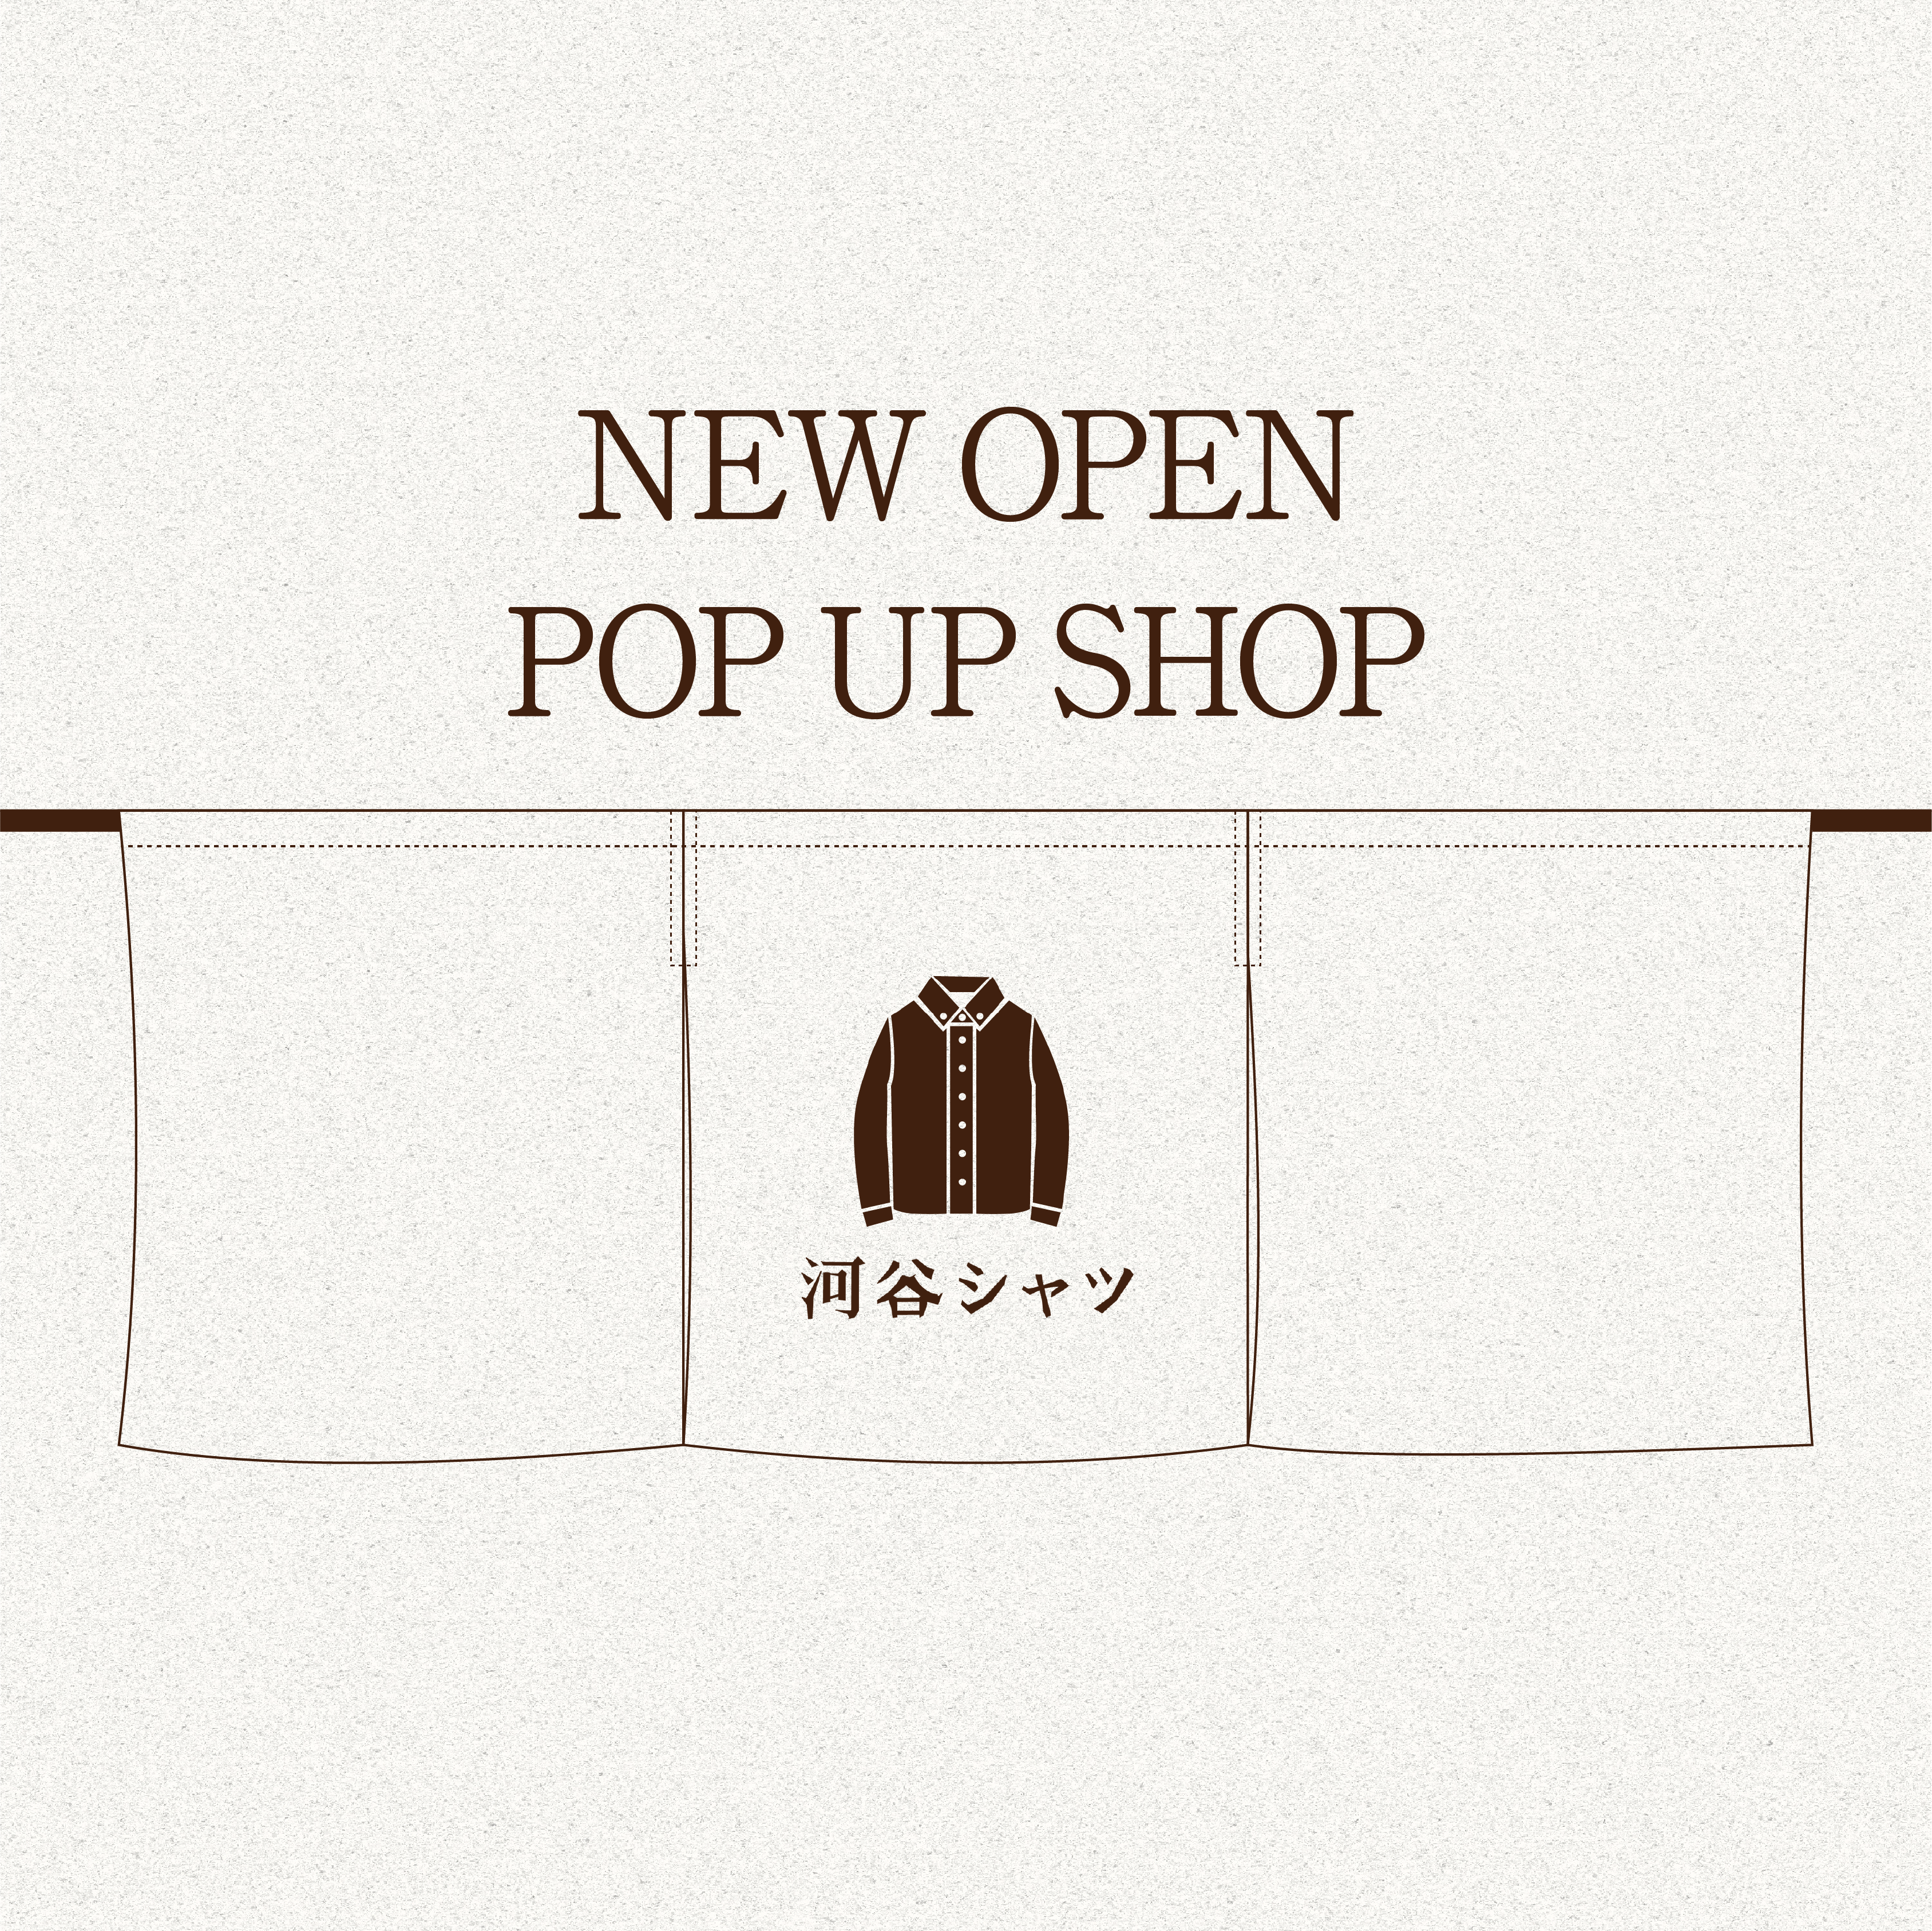  【New】ラスカ茅ヶ崎(神奈川)にPOPUPSHOPがオープンしました♪